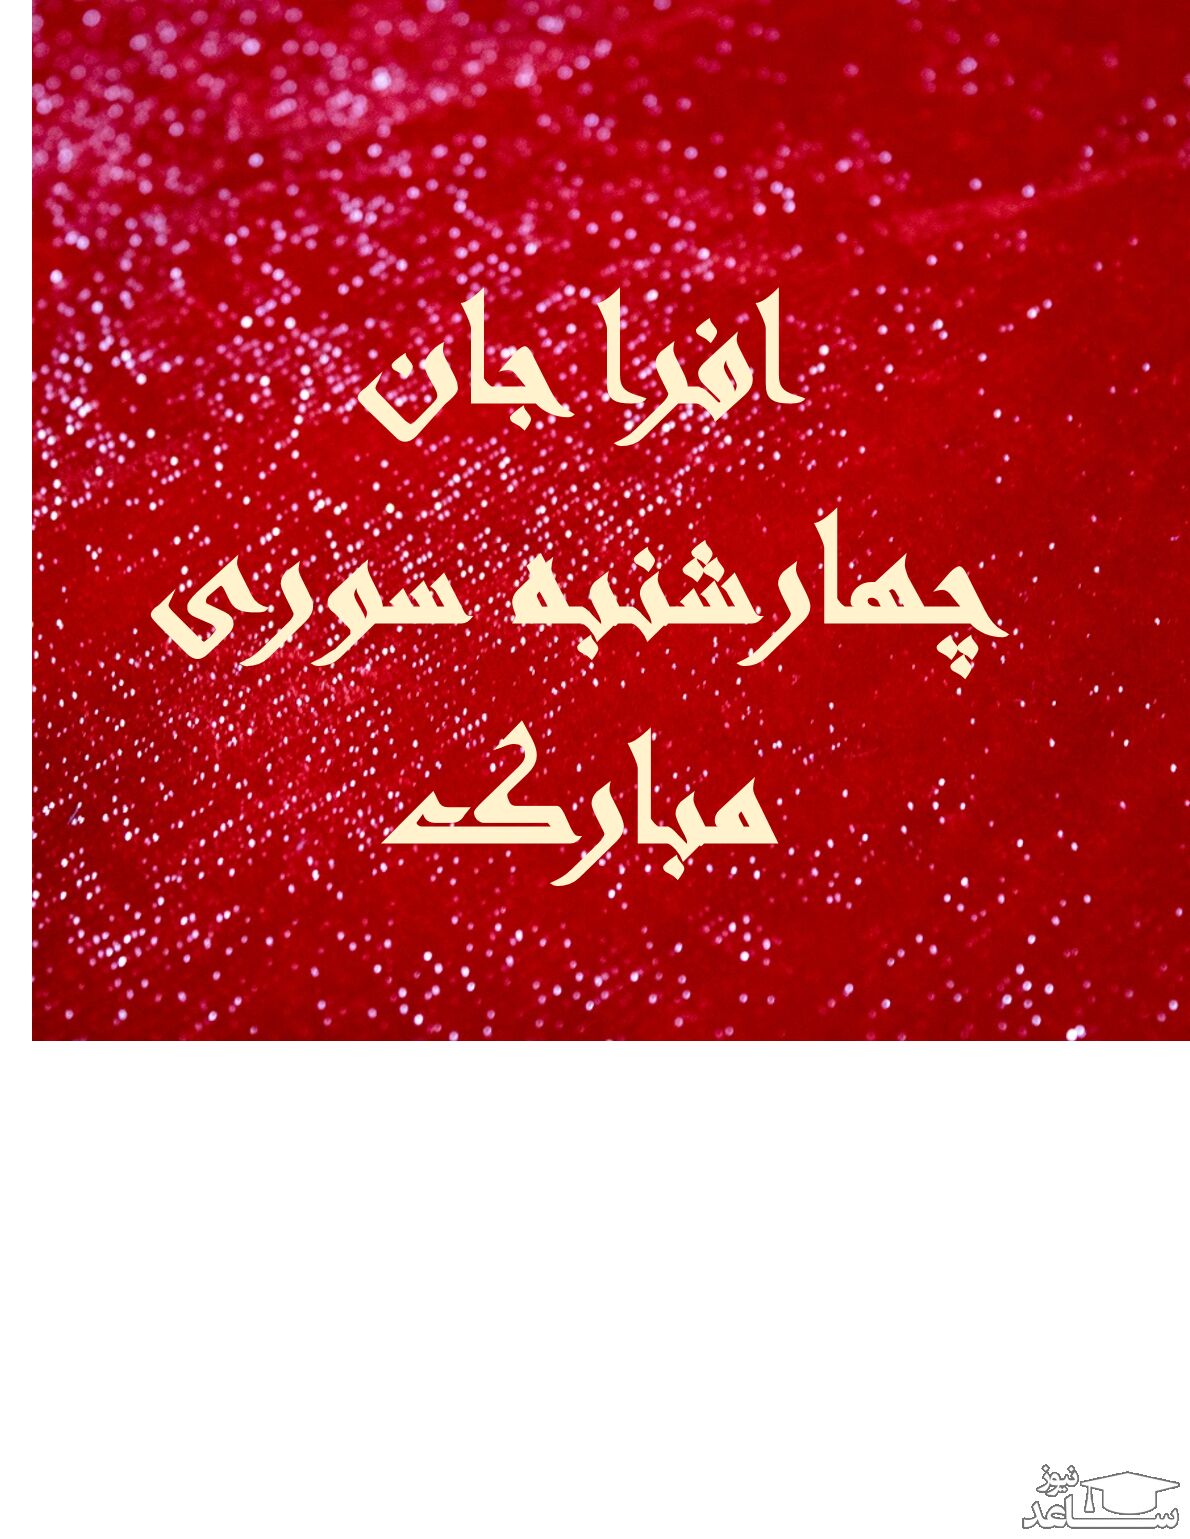 زیباترین اس ام اس های تبریک چهارشنبه سوری برای افرا